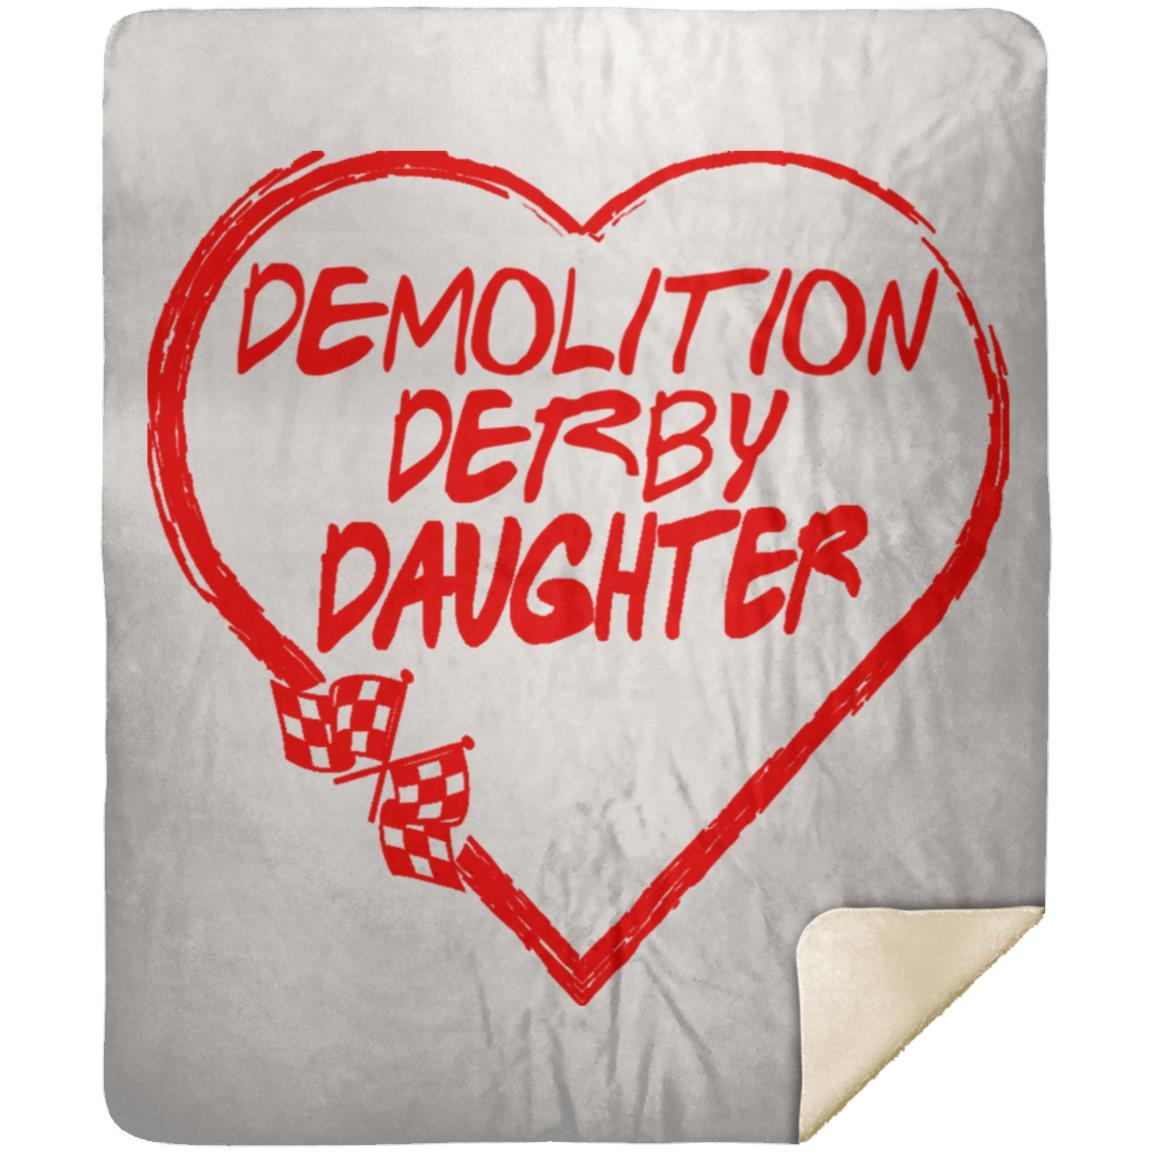 Demolition Derby Daughter Heart Premium Mink Sherpa Blanket 50x60